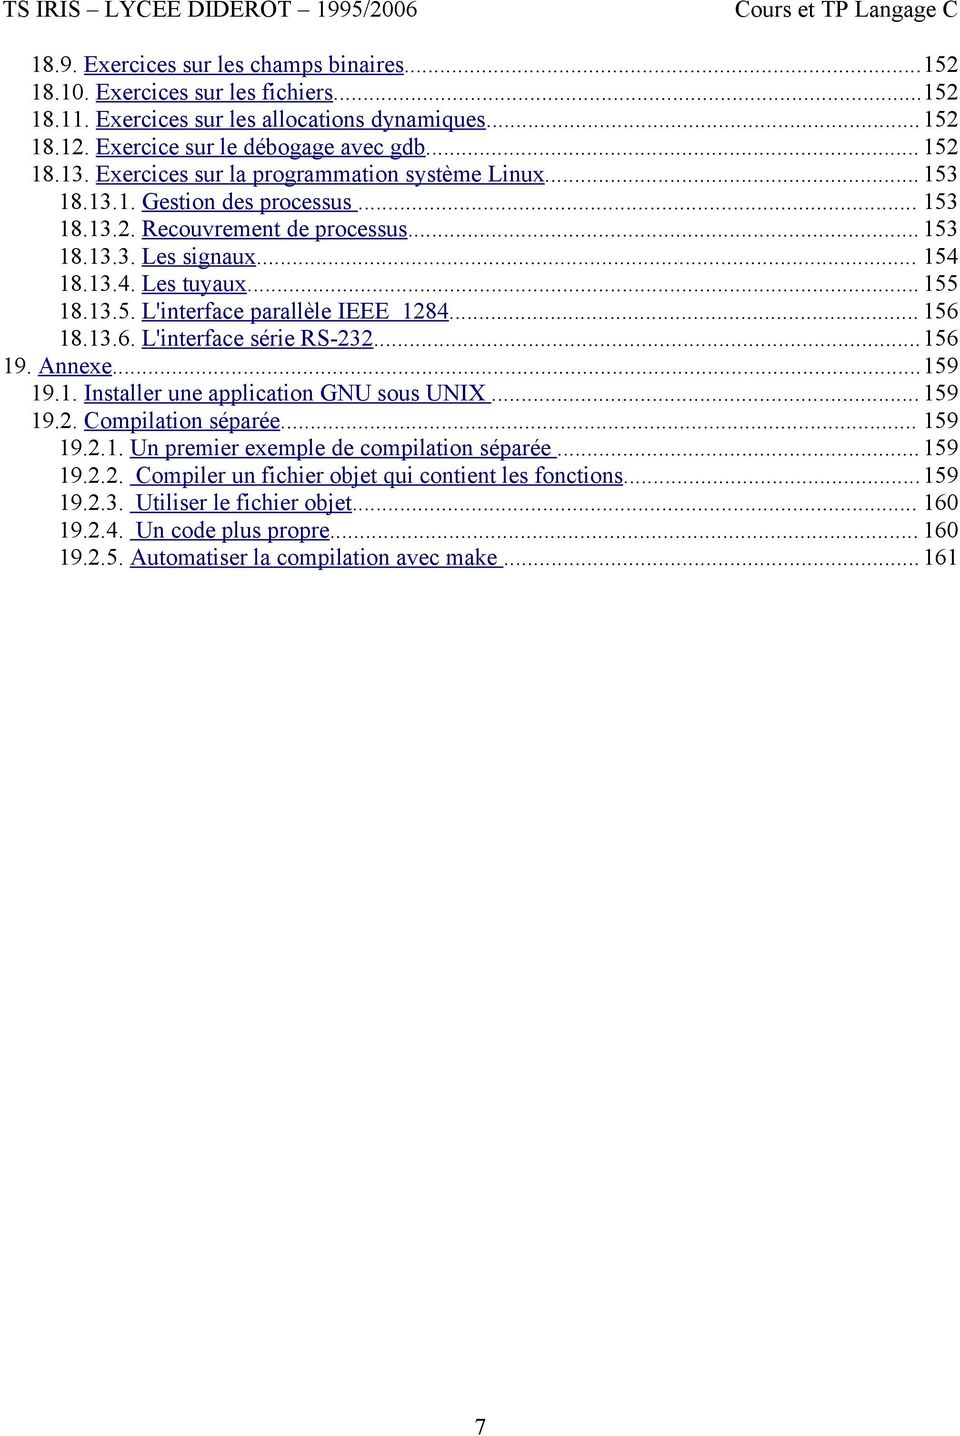 .. 156 18.13.6. L'interface série RS-232...156 19. Annexe...159 19.1. Installer une application GNU sous UNIX...159 19.2. Compilation séparée... 159 19.2.1. Un premier exemple de compilation séparée.